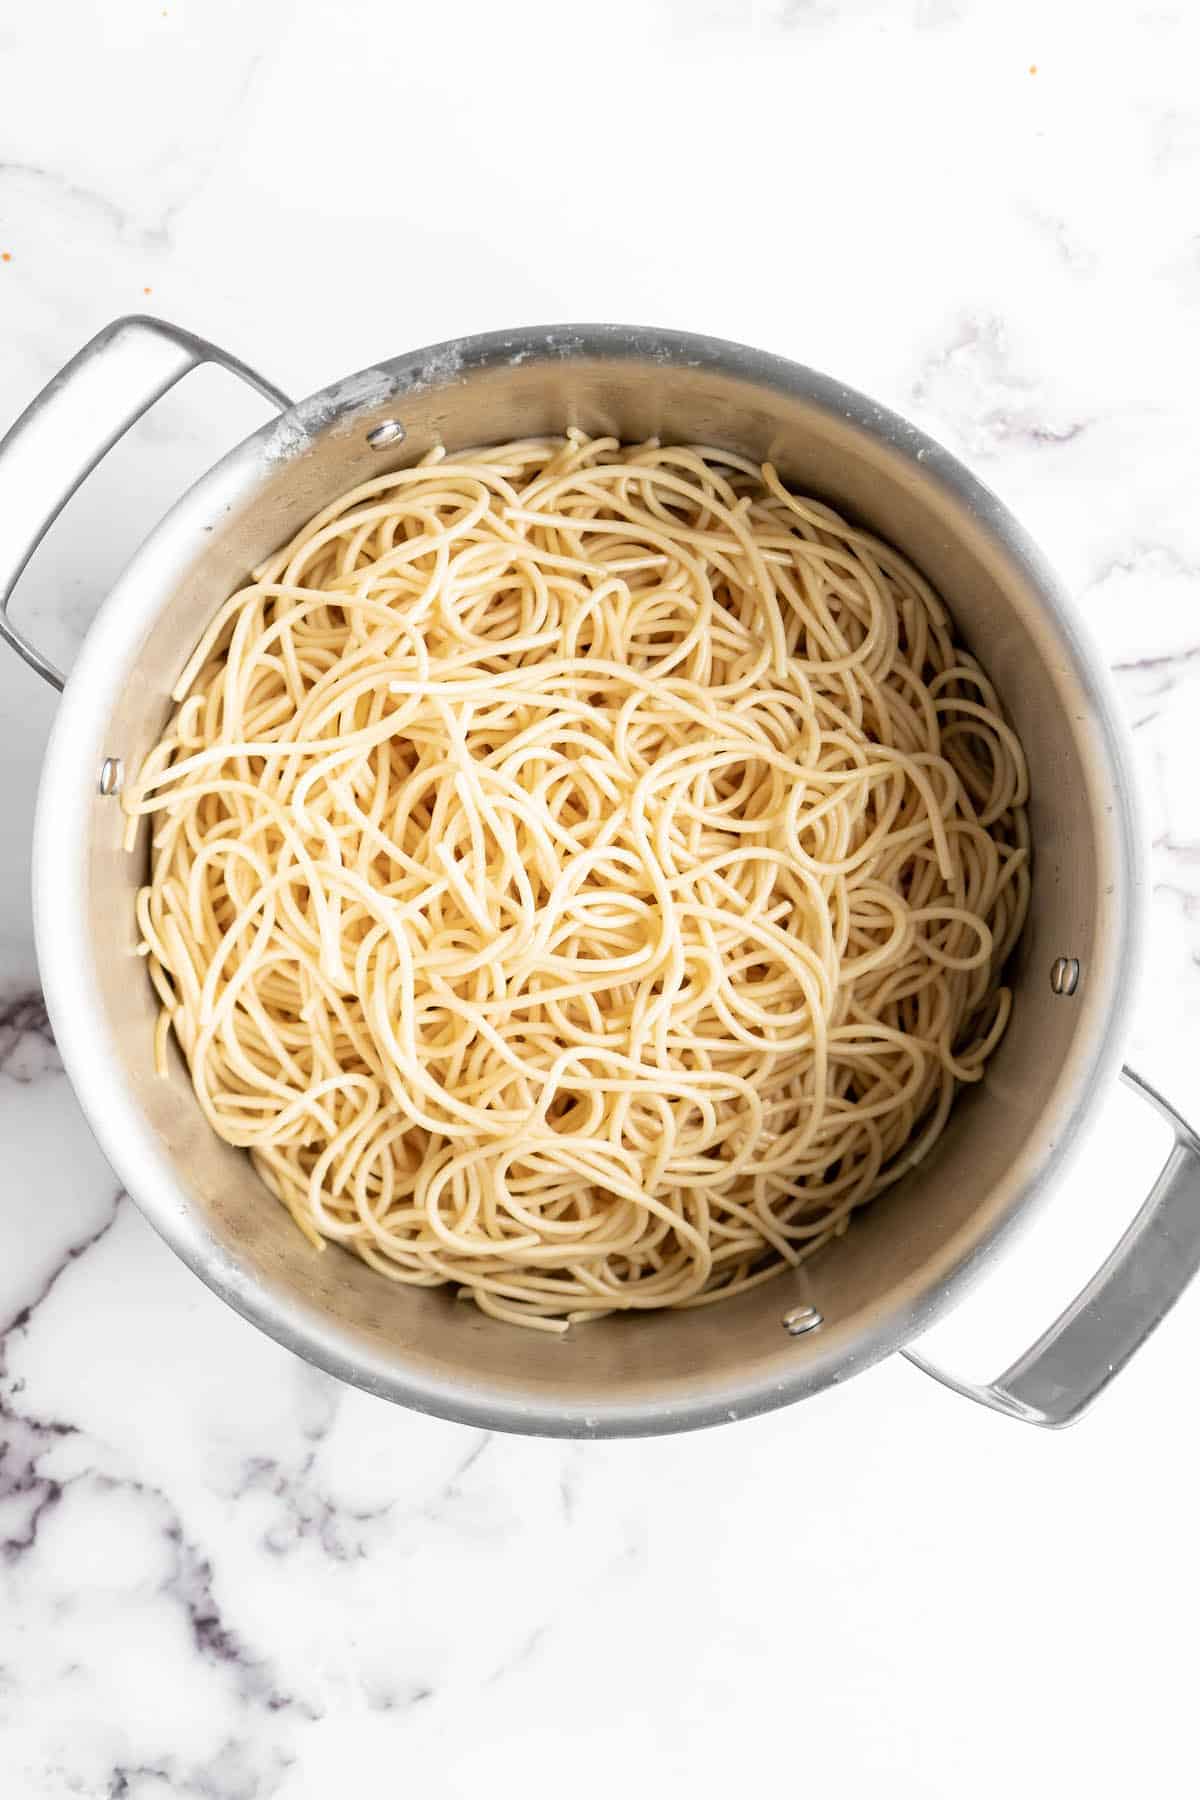 Cooked spaghetti in pan